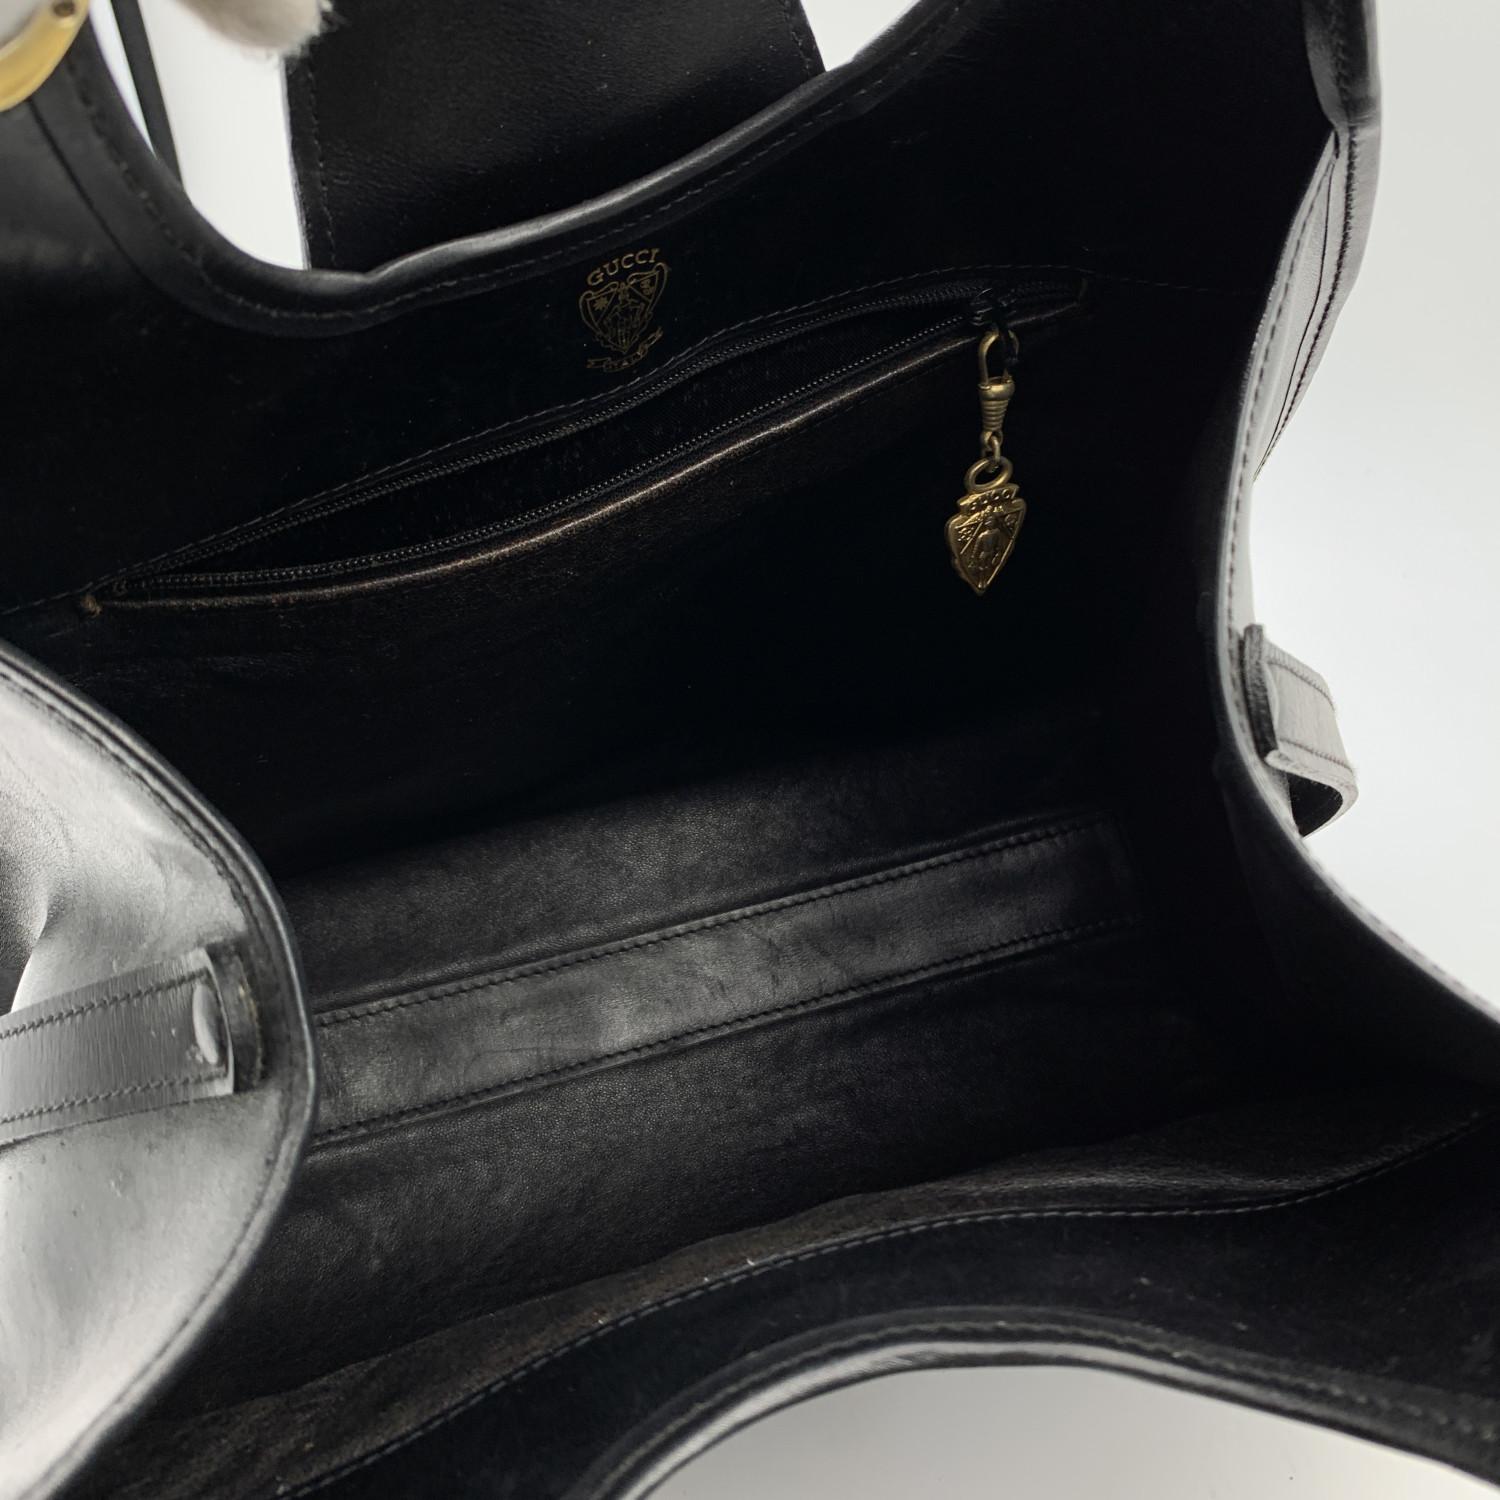 Gucci Vintage Black Leather Stirrup Hobo Bag Handbag 2